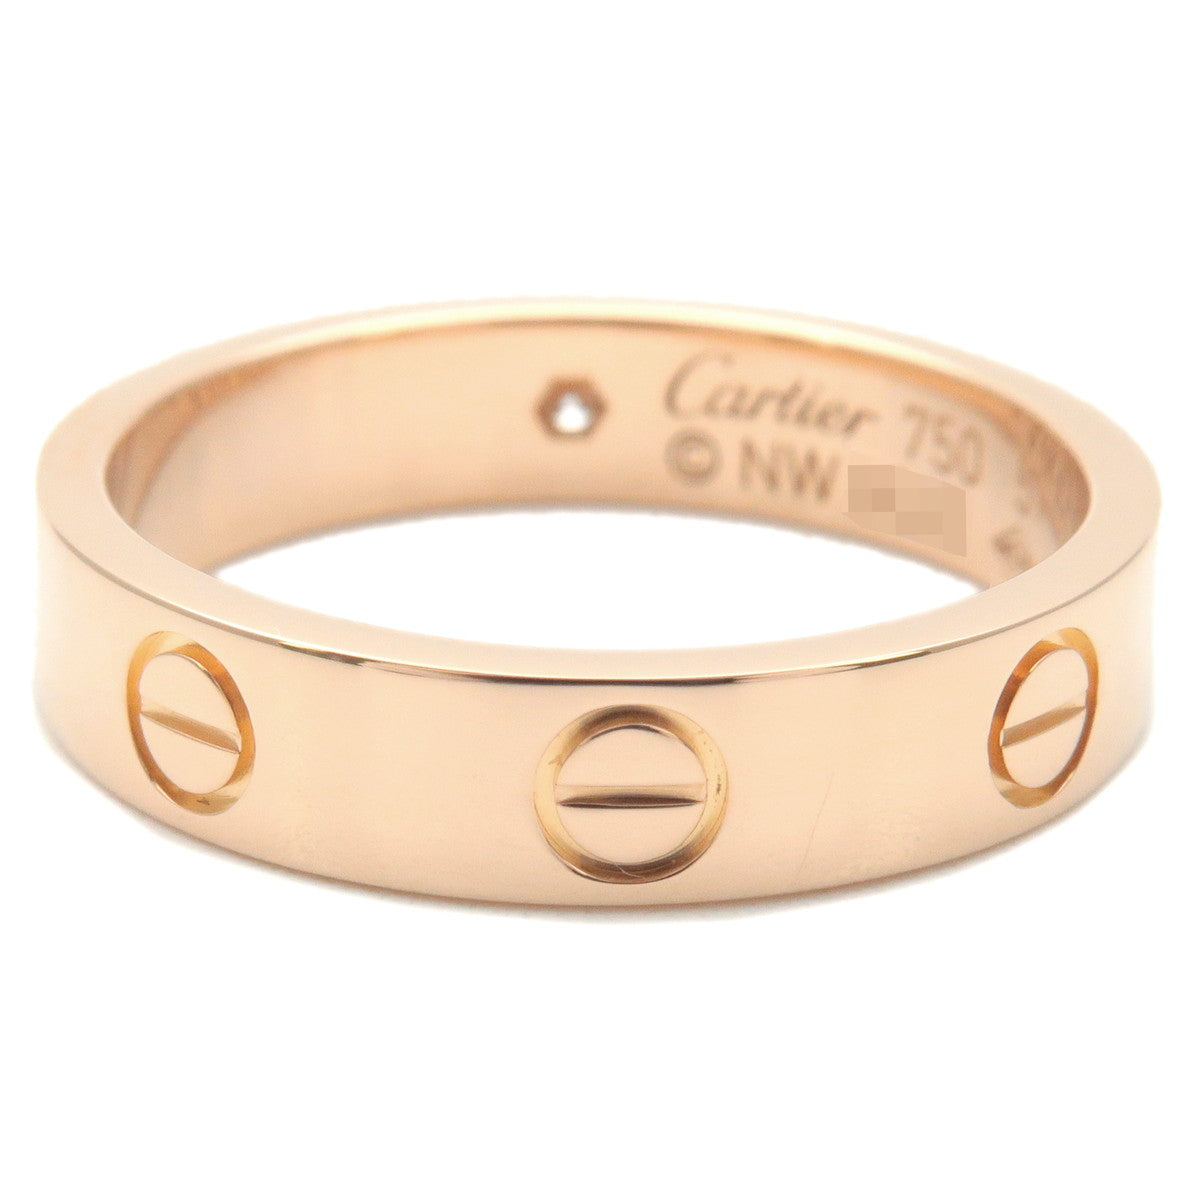 Cartier Mini Love Ring 1P Diamond K18 750PG #51 US5.5-6 EU51